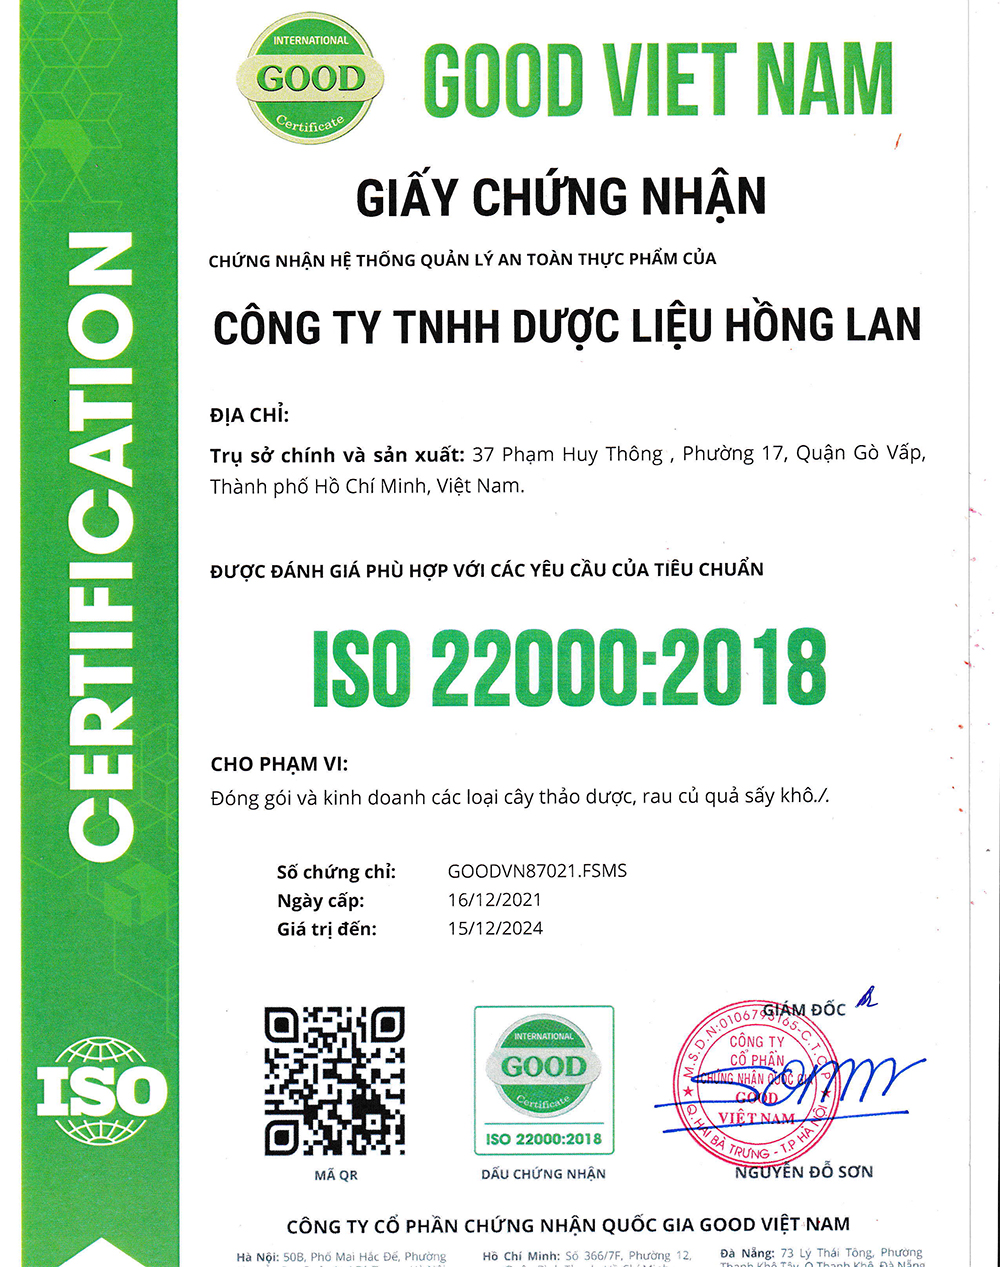 Trà túi lọc Củ Hà Thủ Ô Đỏ được sản xuất bởi Công ty TNHH Dược Liệu Hồng Lan theo hệ thống quản lý an toàn thực phẩm ISO 22000:2018 được cấp bởi công ty cổ phần chứng nhận Quốc Gia Good Việt Nam (Good Viet Nam Certification Joint Stock Company)